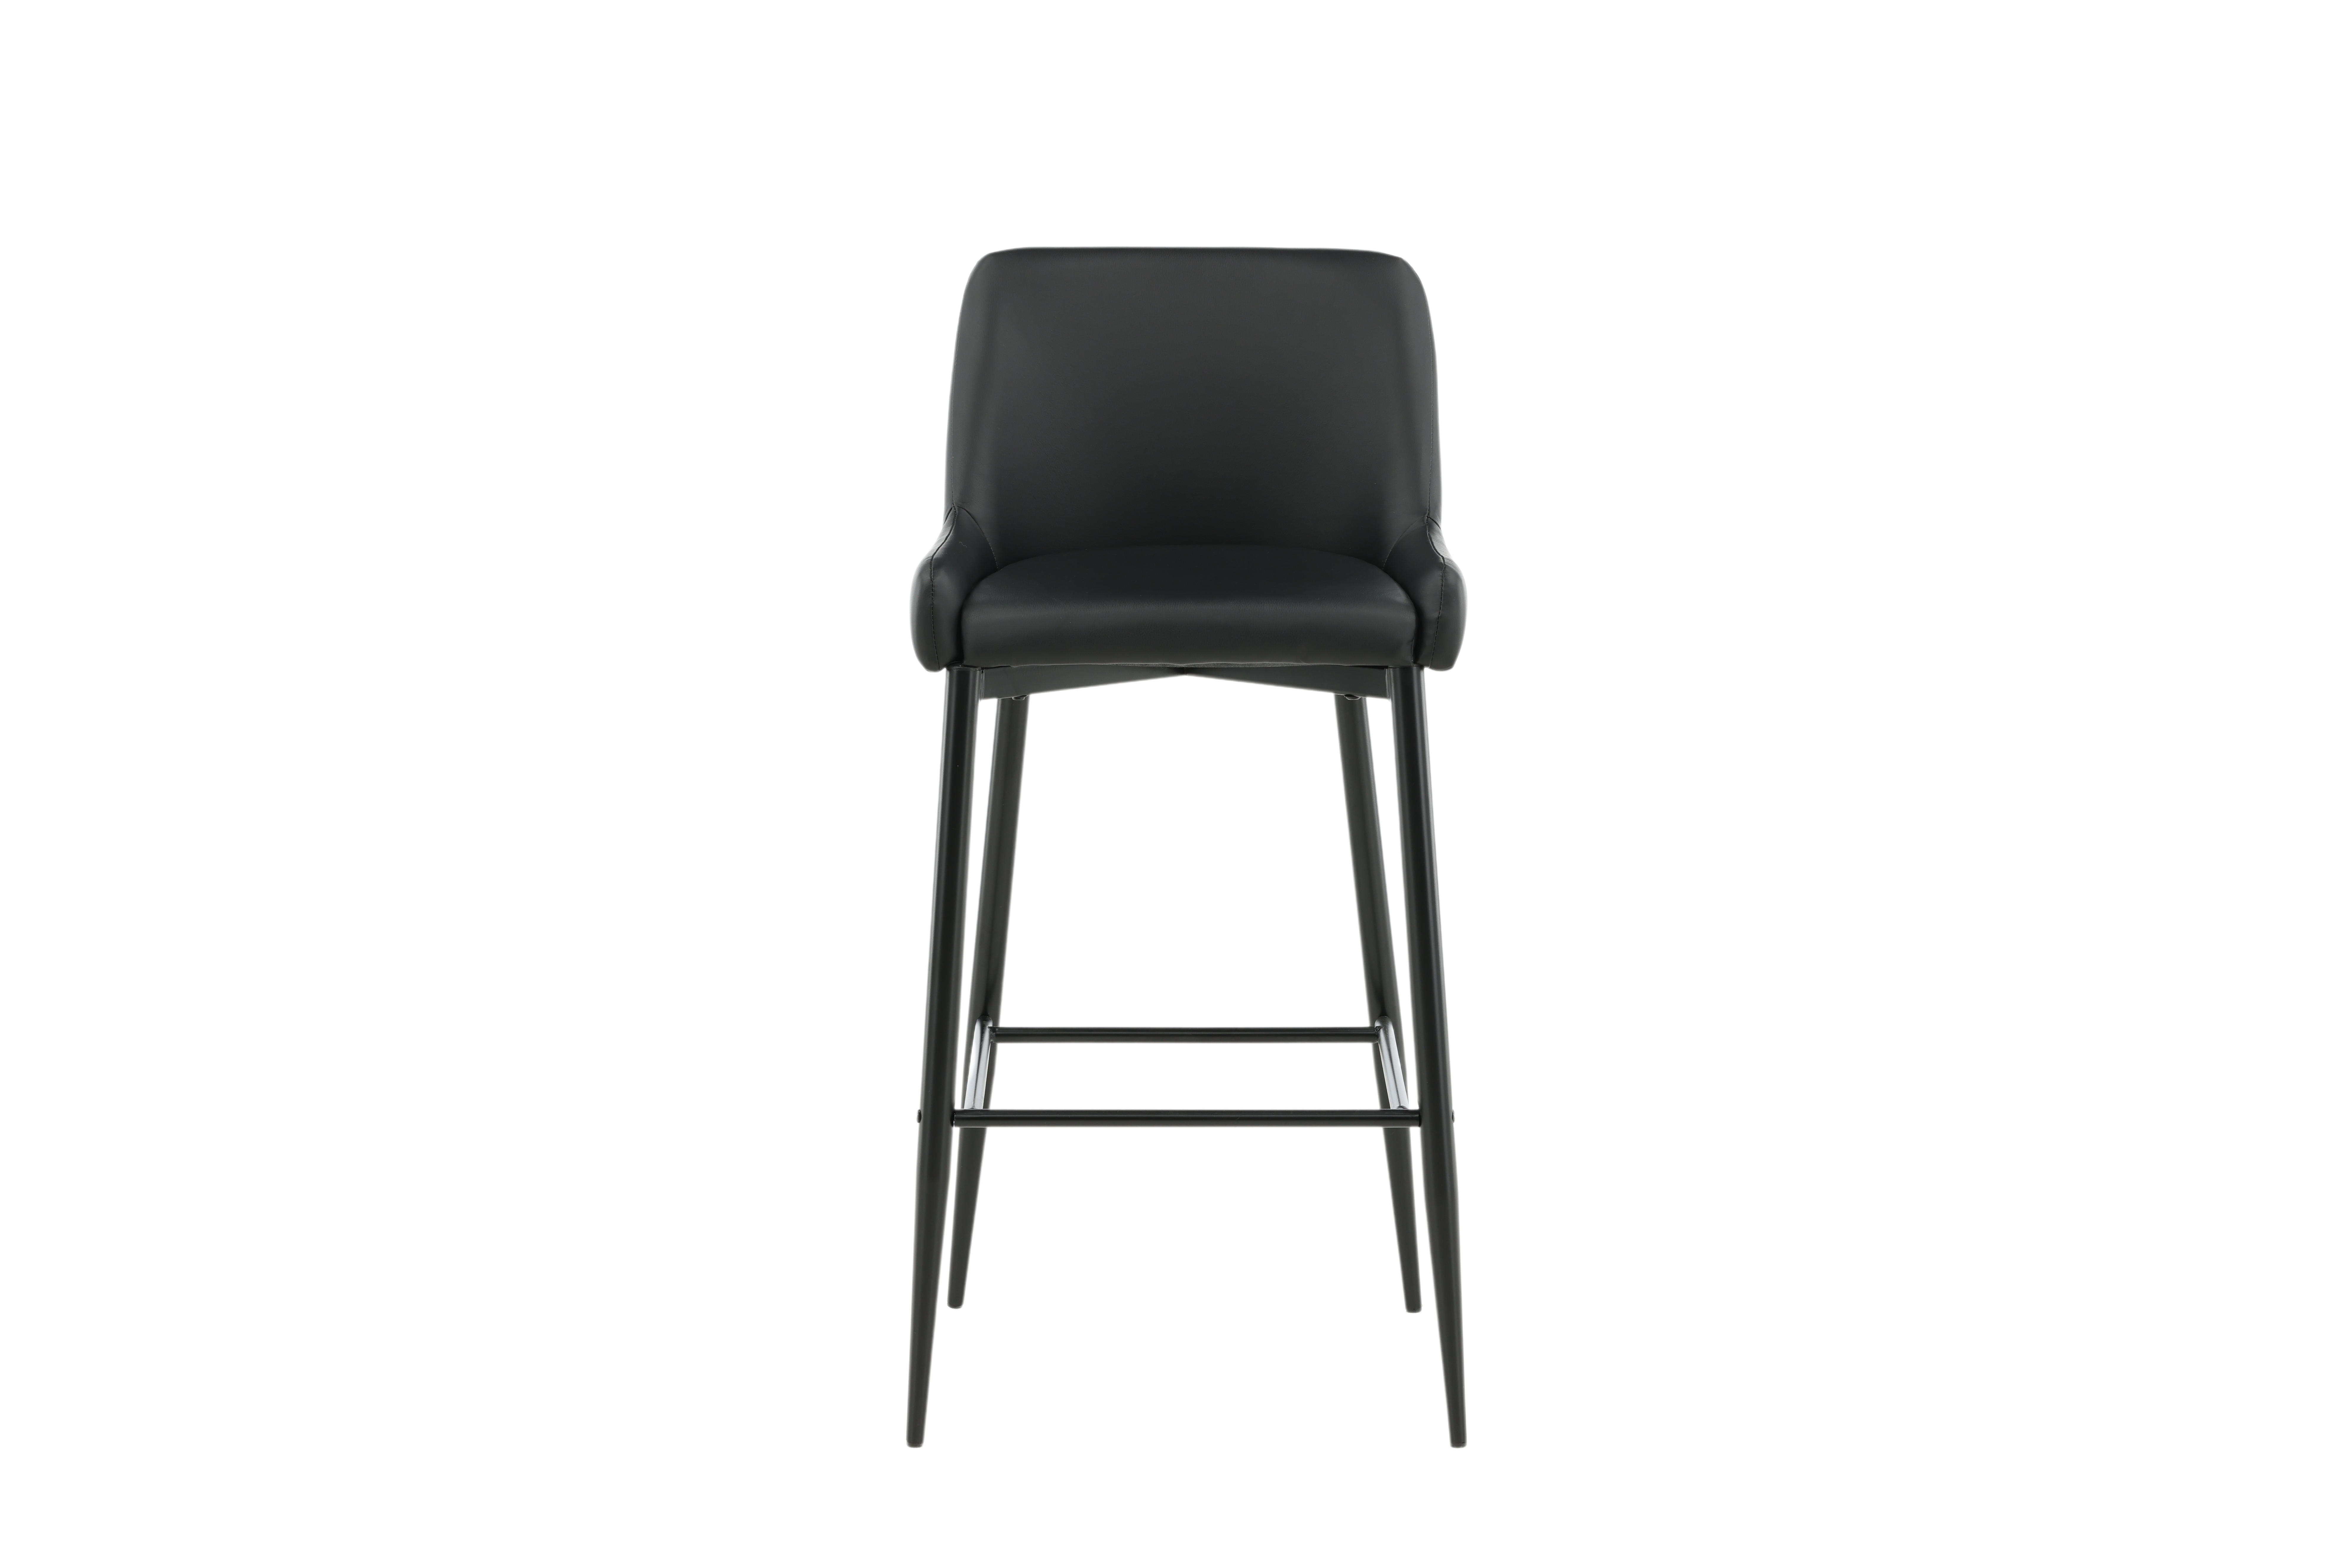 VENTURE DESIGN Plaza barstol, m. ryglæn og fodstøtte - sort PU/polyester og sort stål